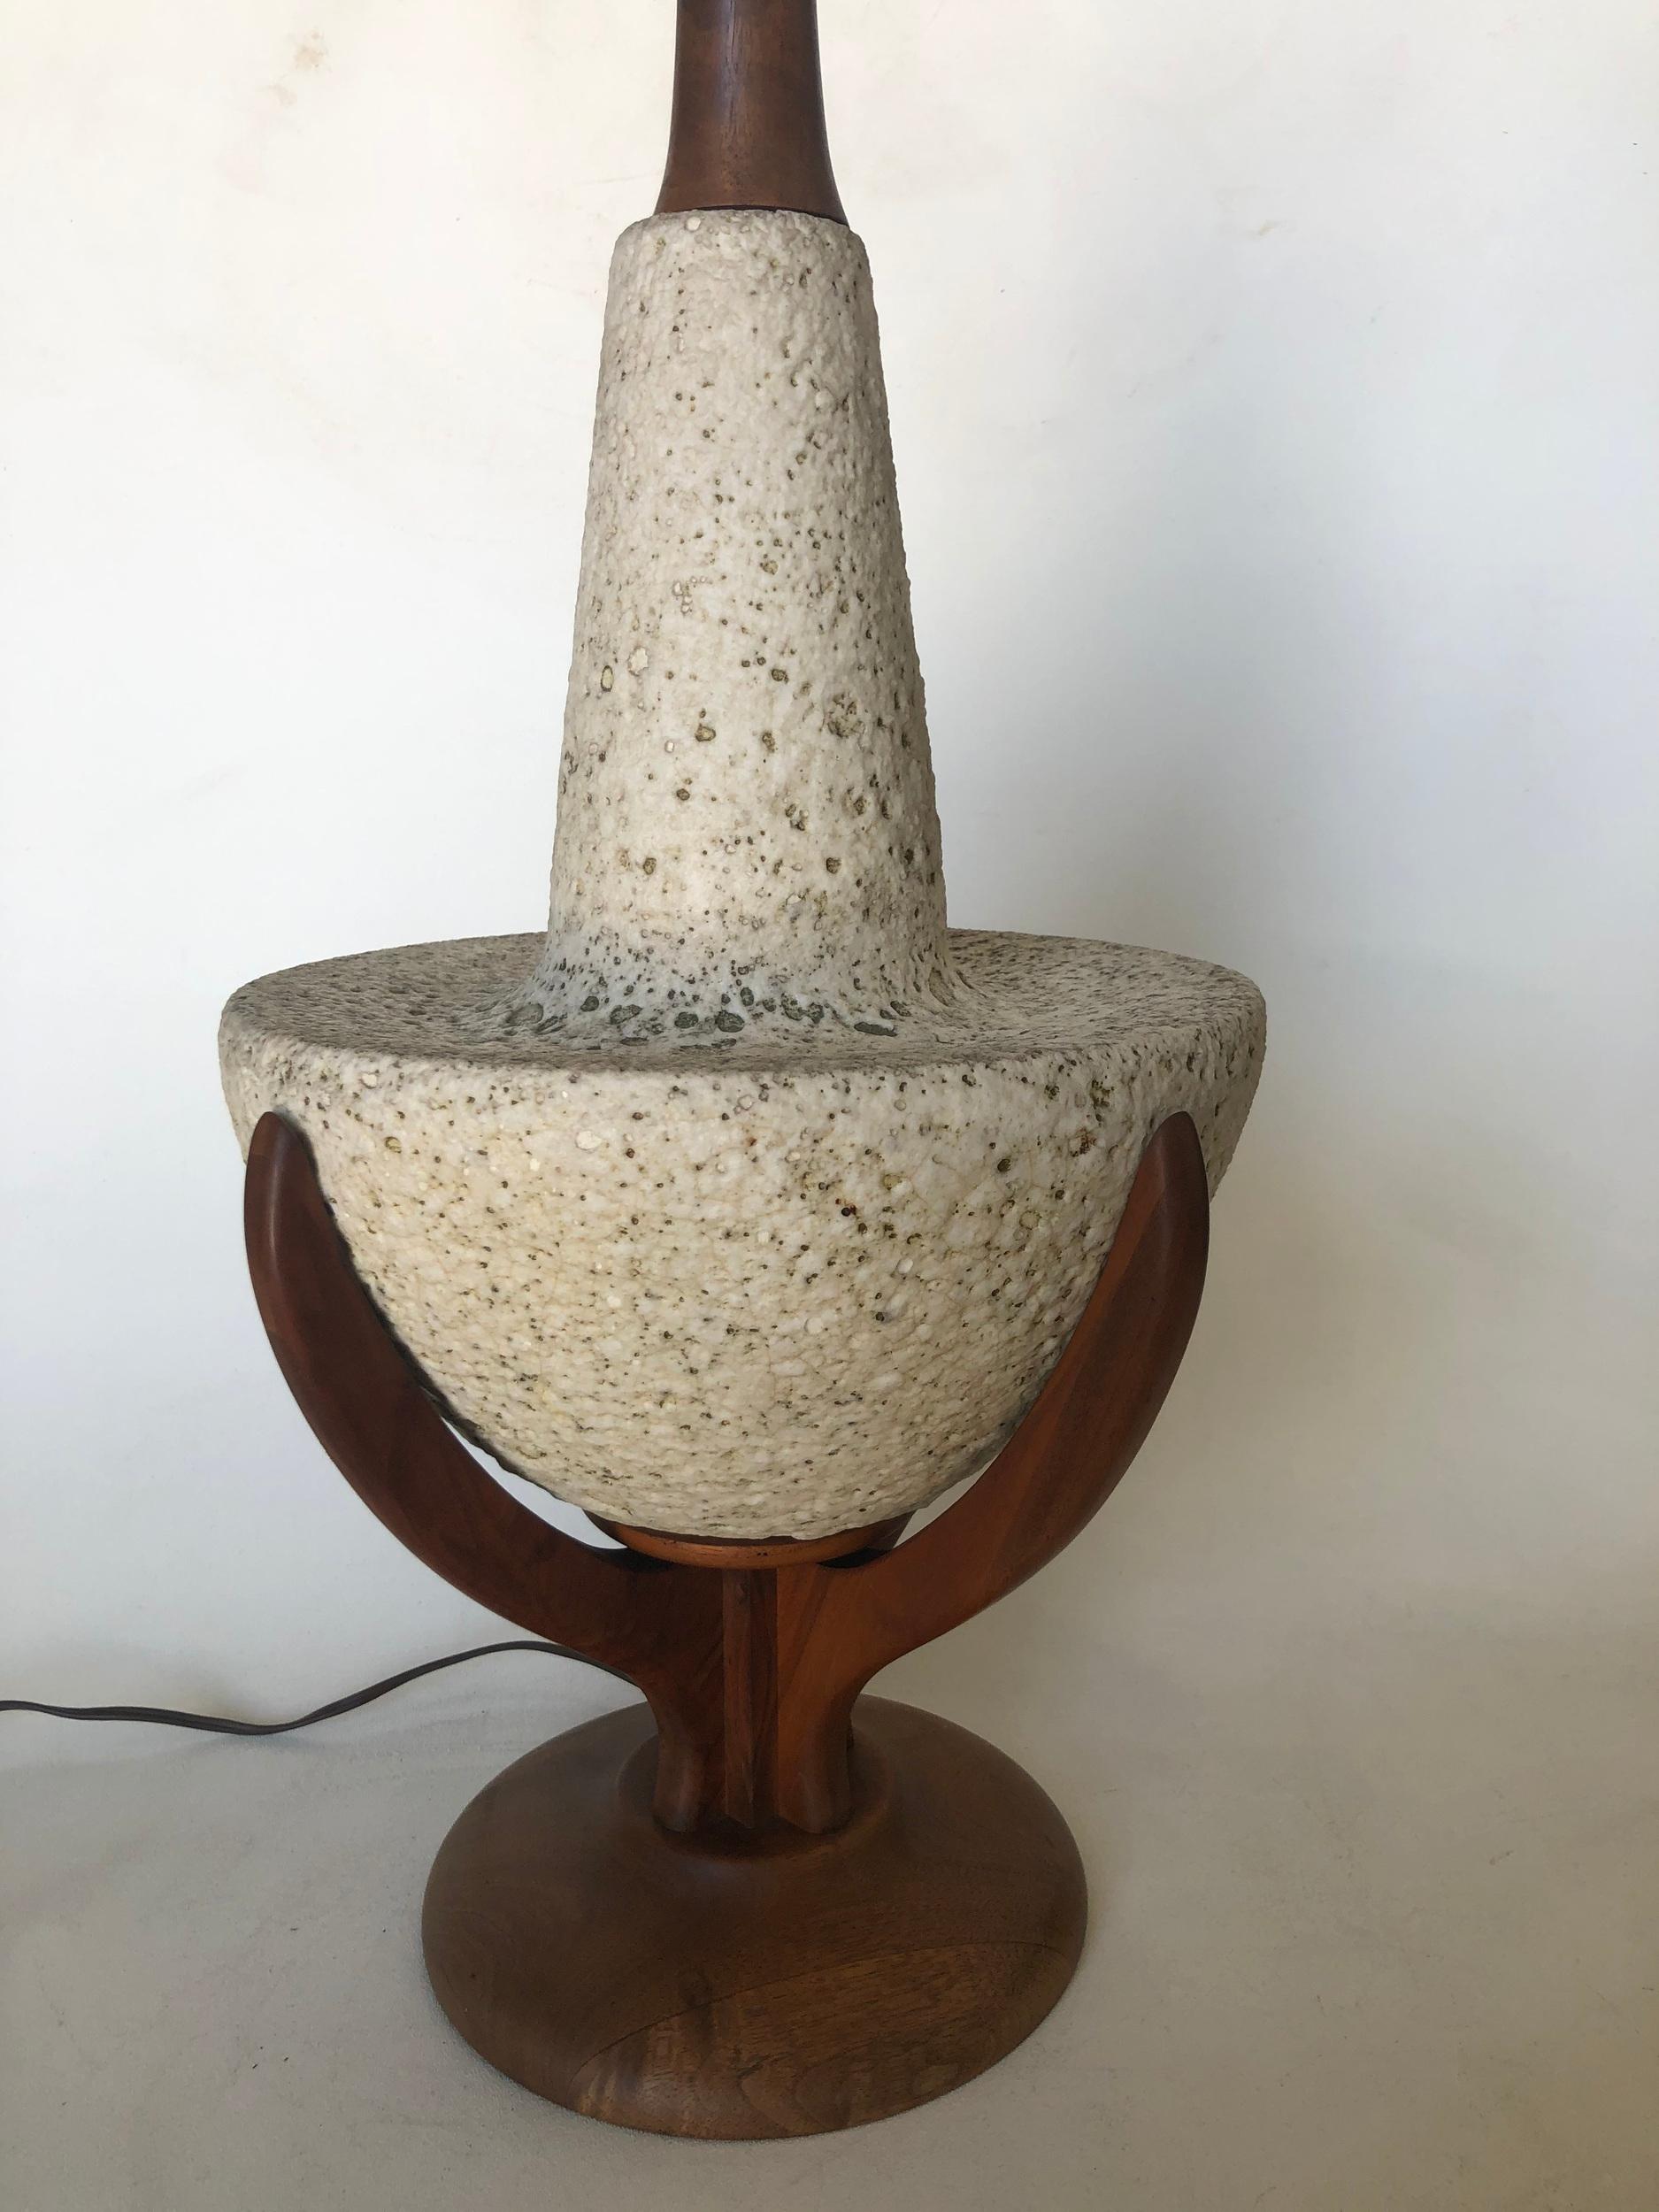 Lampe d'appoint de table en pierre de galets et teck, de style moderne du milieu du siècle.

Mesures : 29